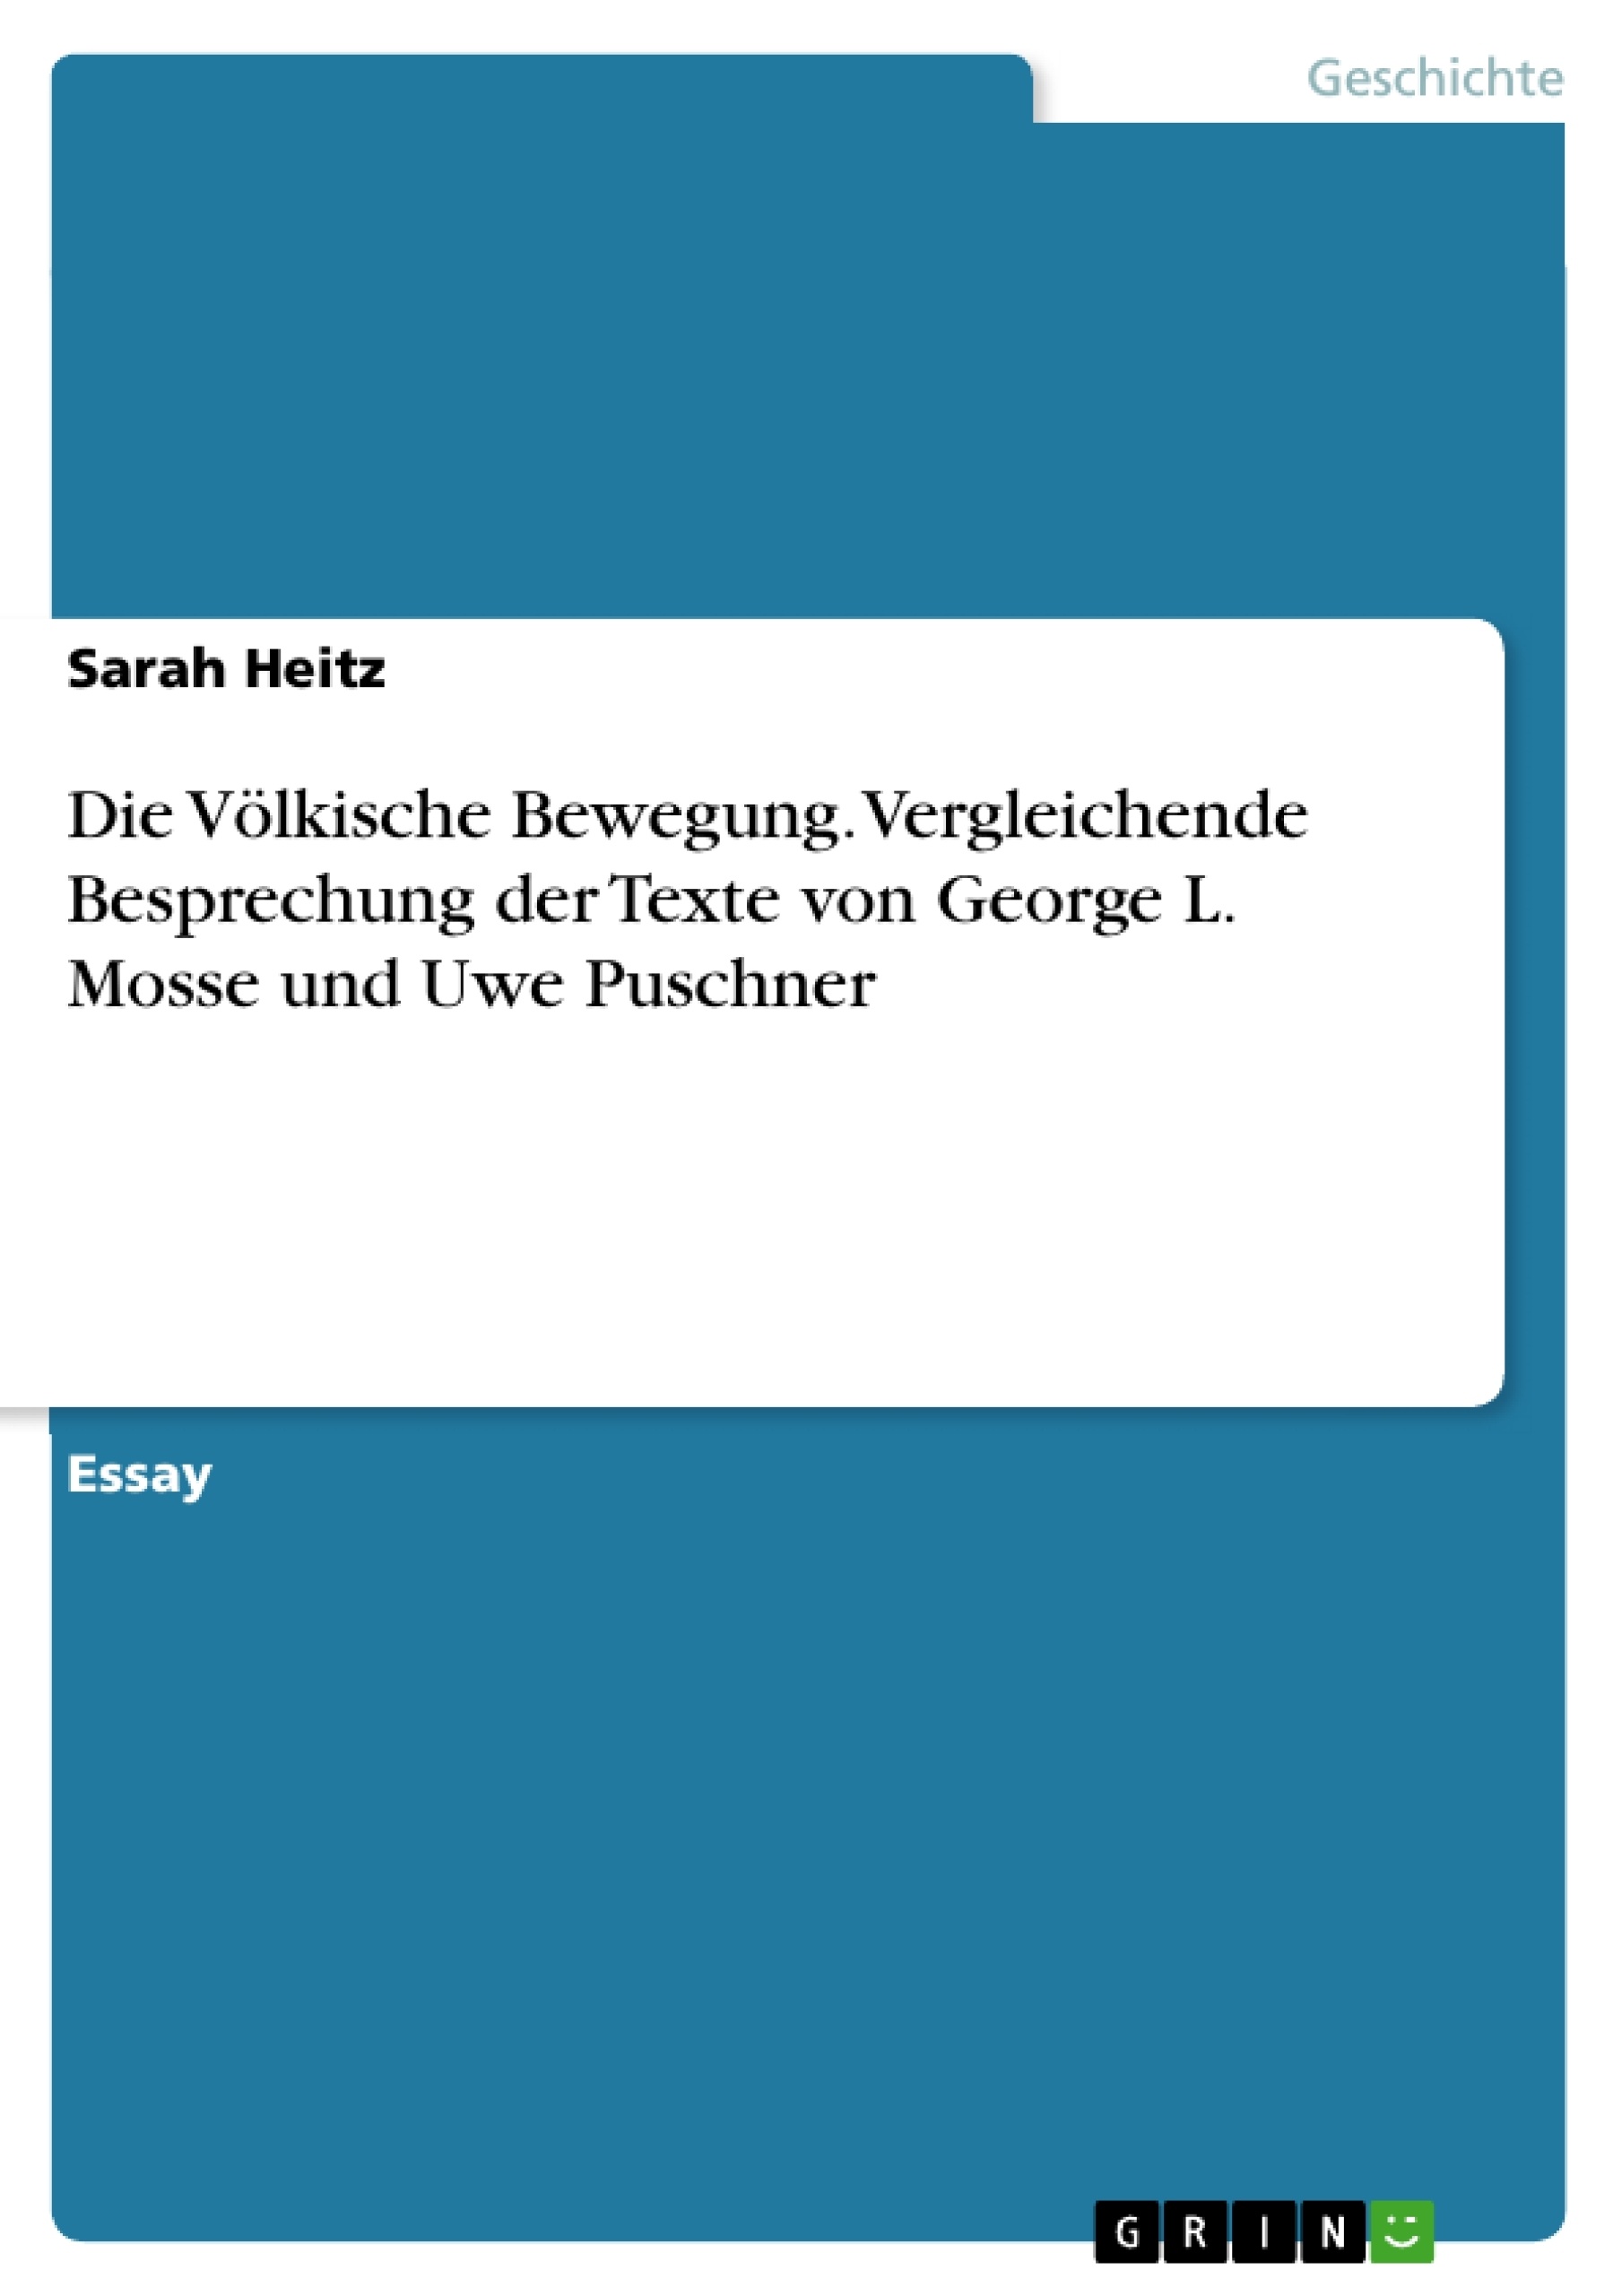 Title: Die Völkische Bewegung. Vergleichende Besprechung der Texte von George L. Mosse und Uwe Puschner